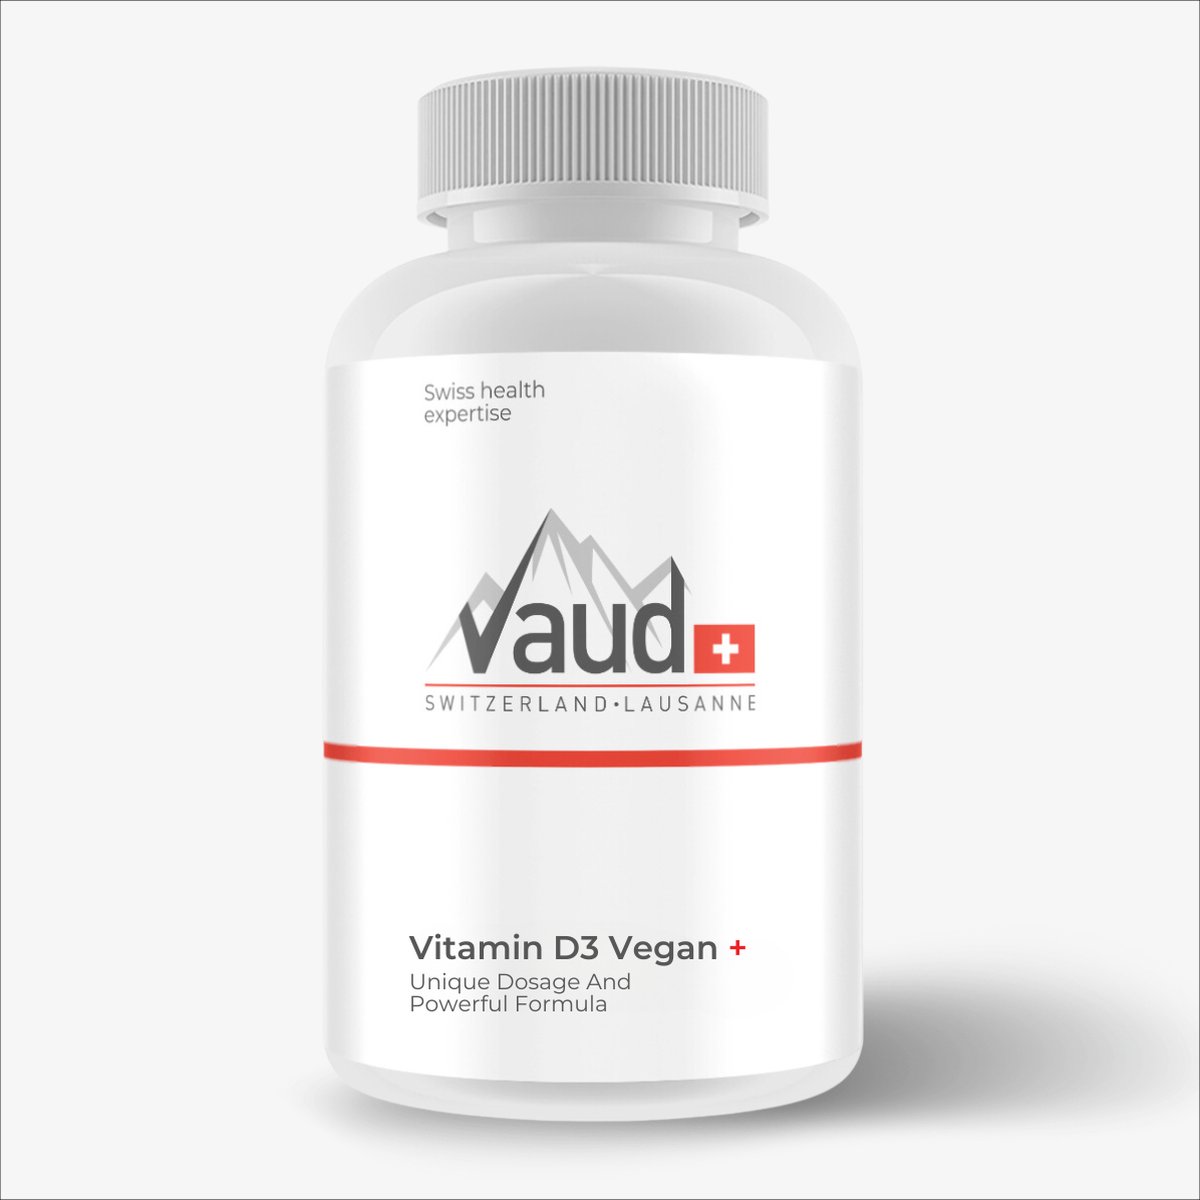 Vitamine D3 Vegan Vaud | 100 softgels | Immuunsysteem - Vaud